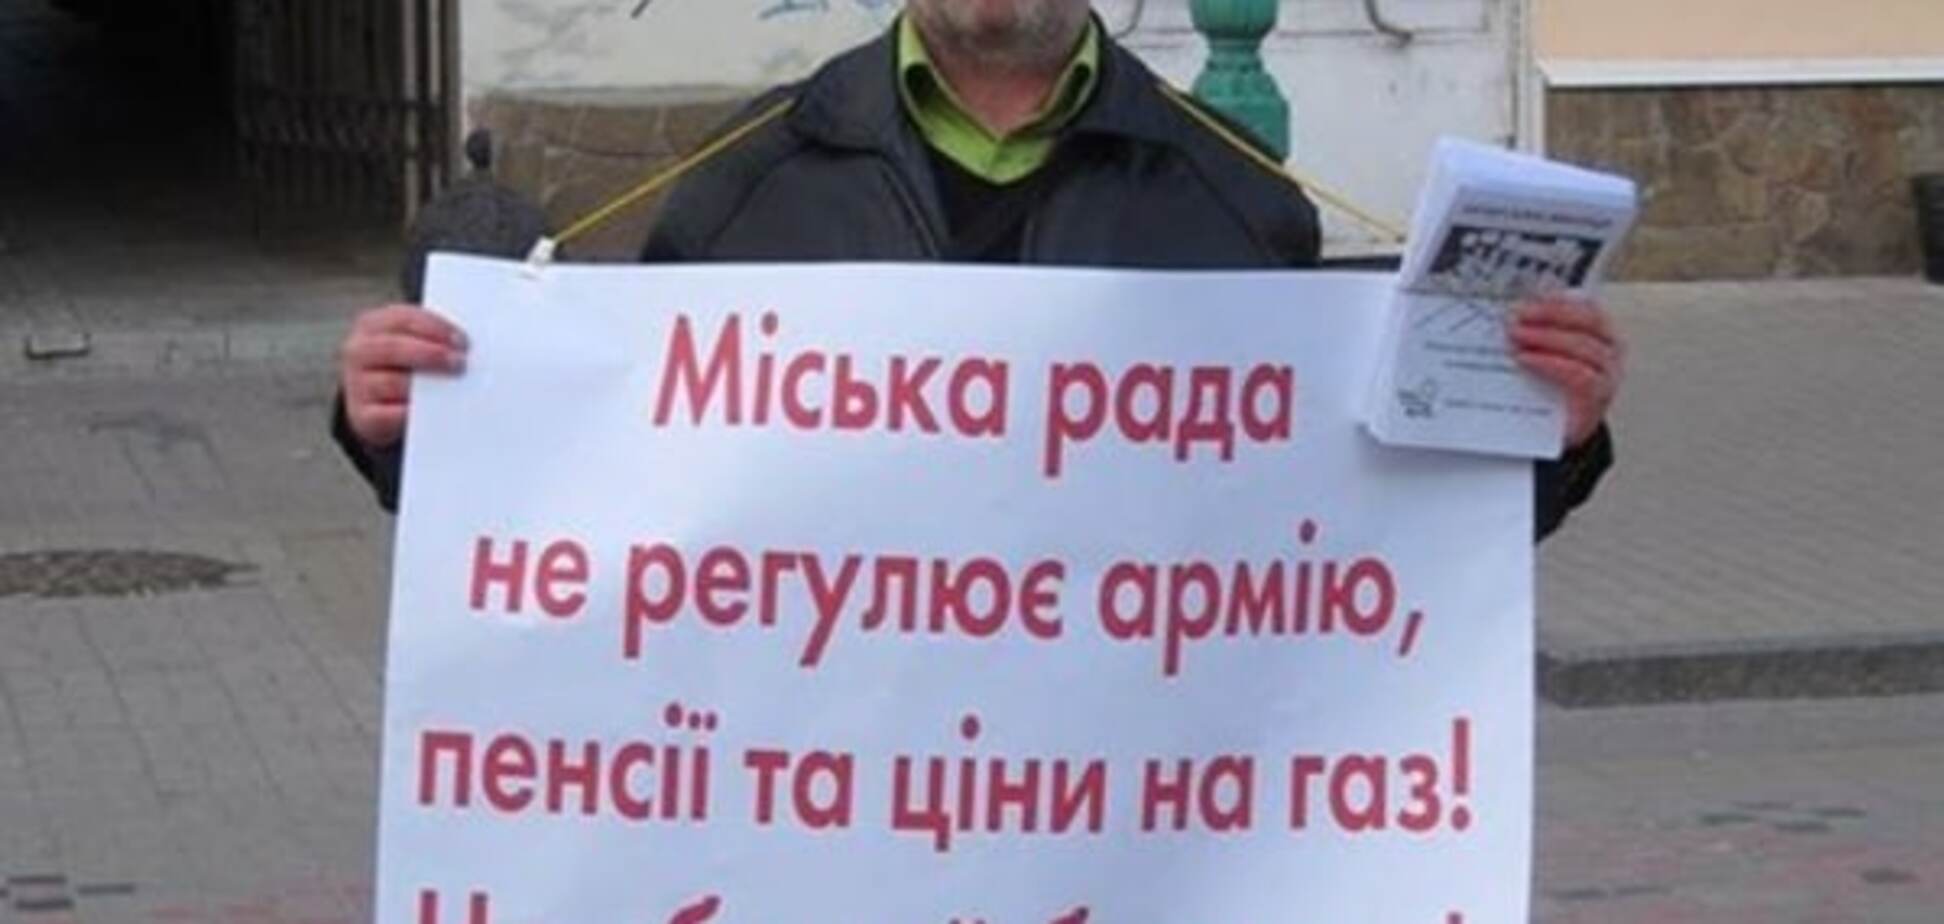 Украинец устроил акцию против лжи участников выборов: фотофакт